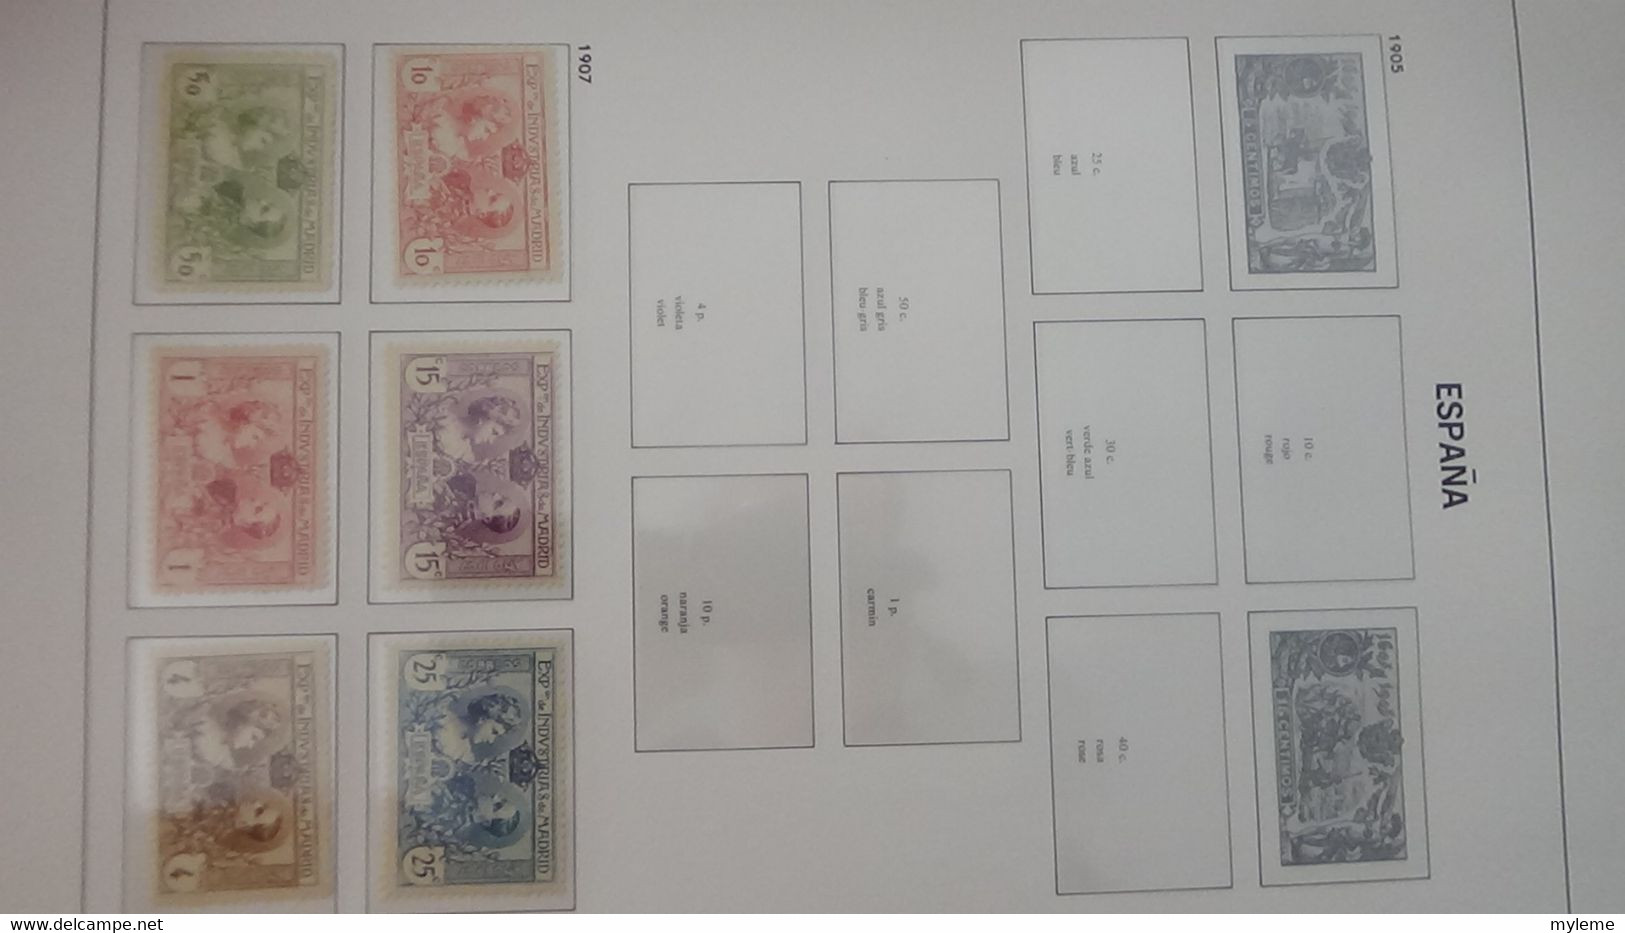 AC280 Reliure DAVO Espagne en timbres **, * et oblitérés  de 1850 à 1940 à compléter.. A saisir !!!